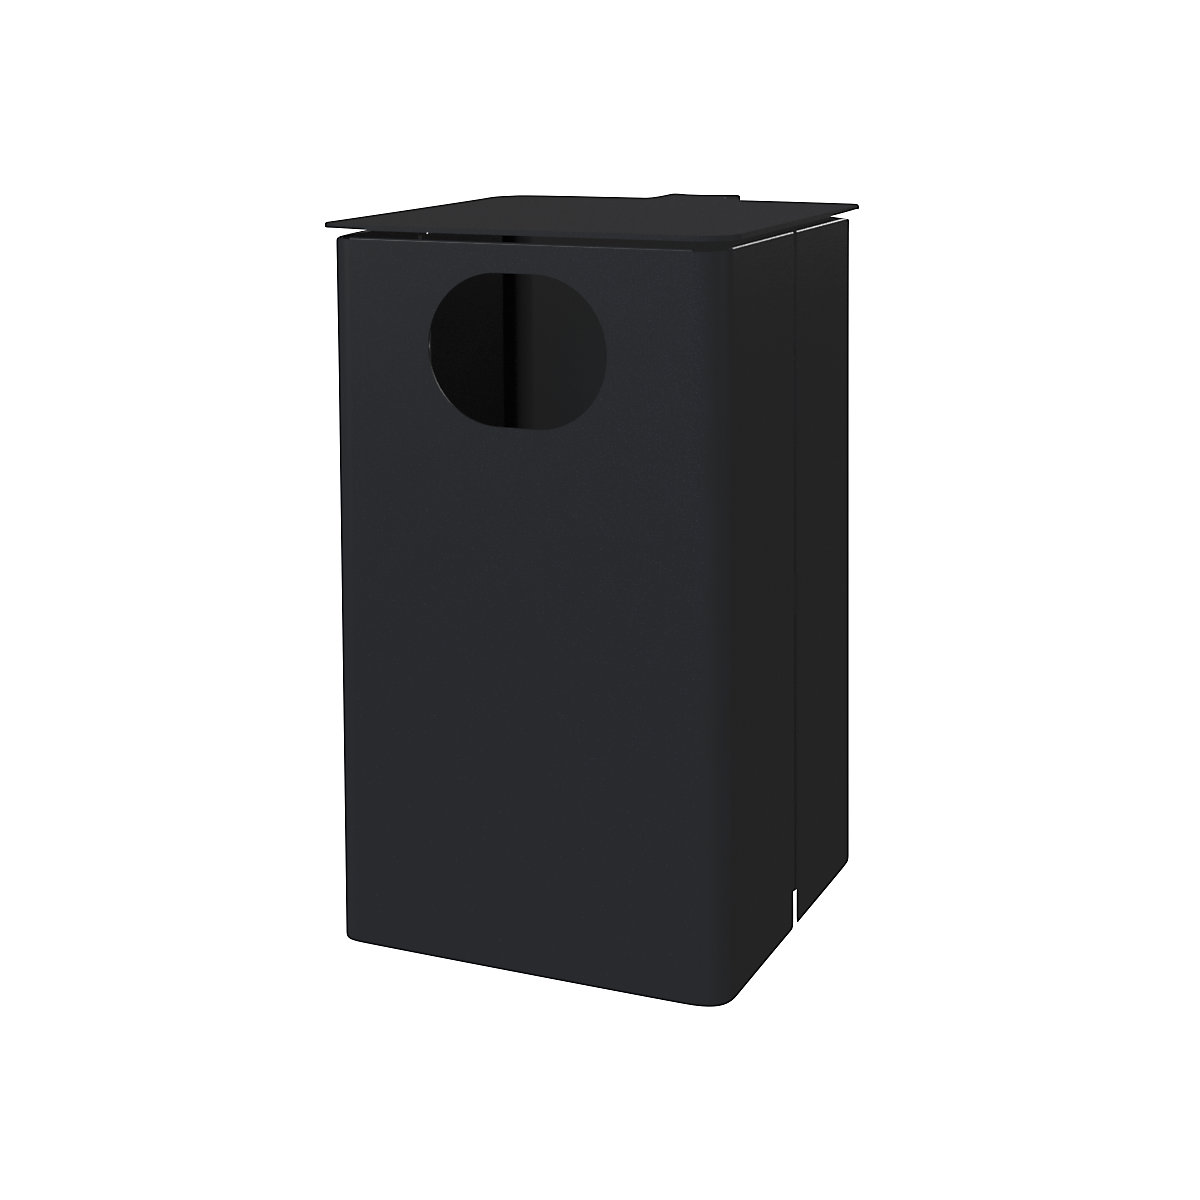 Außen-Abfallbehälter, Volumen 35 l, HxBxT 537 x 325 x 388 mm, schwarzgrau